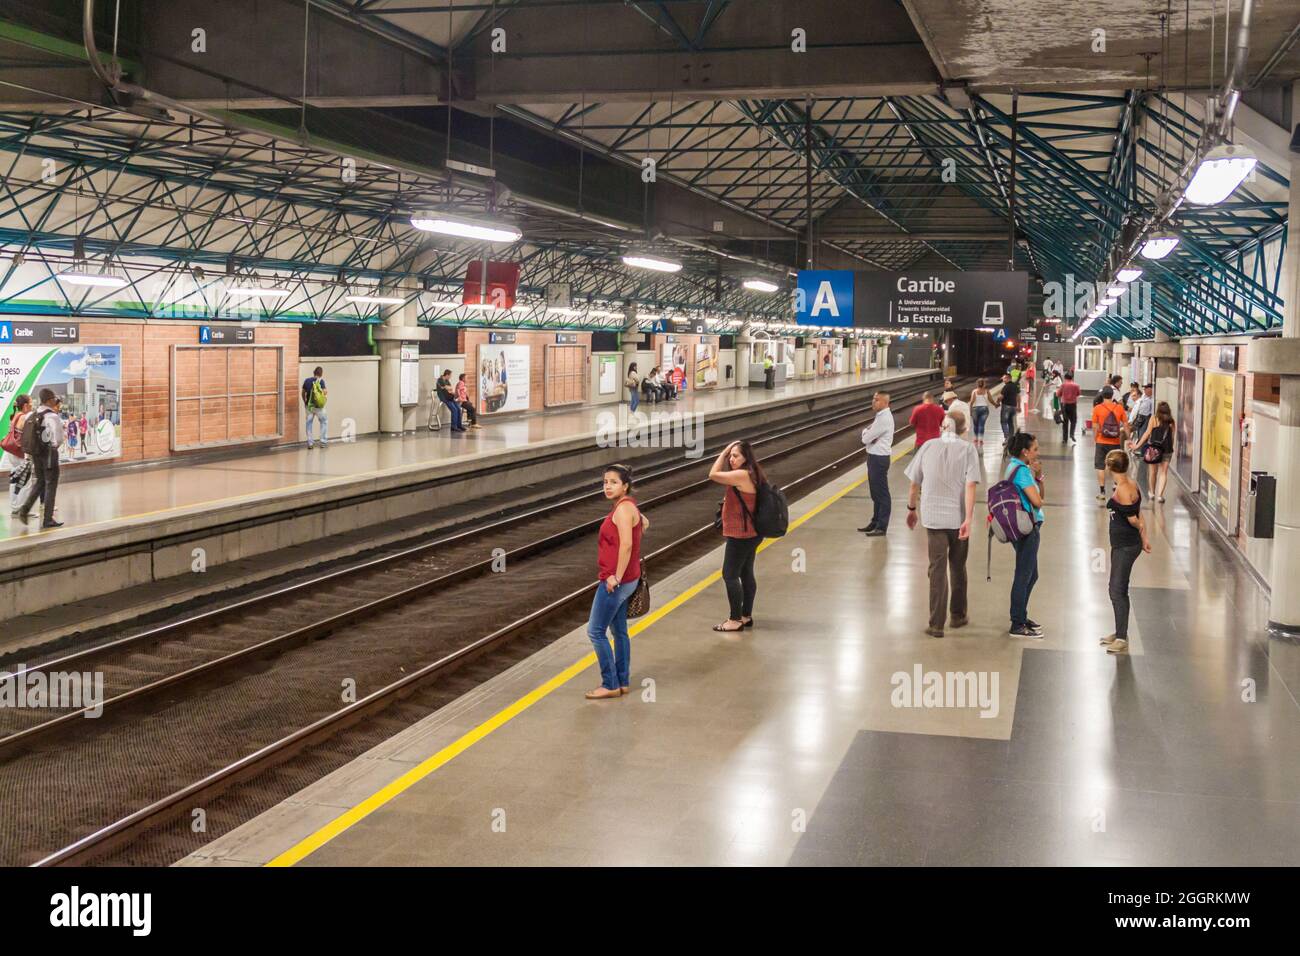 MEDELLIN, COLOMBIE - 2 SEPTEMBRE : des navetteurs attendent à la station Caribe du métro Medellin. Banque D'Images